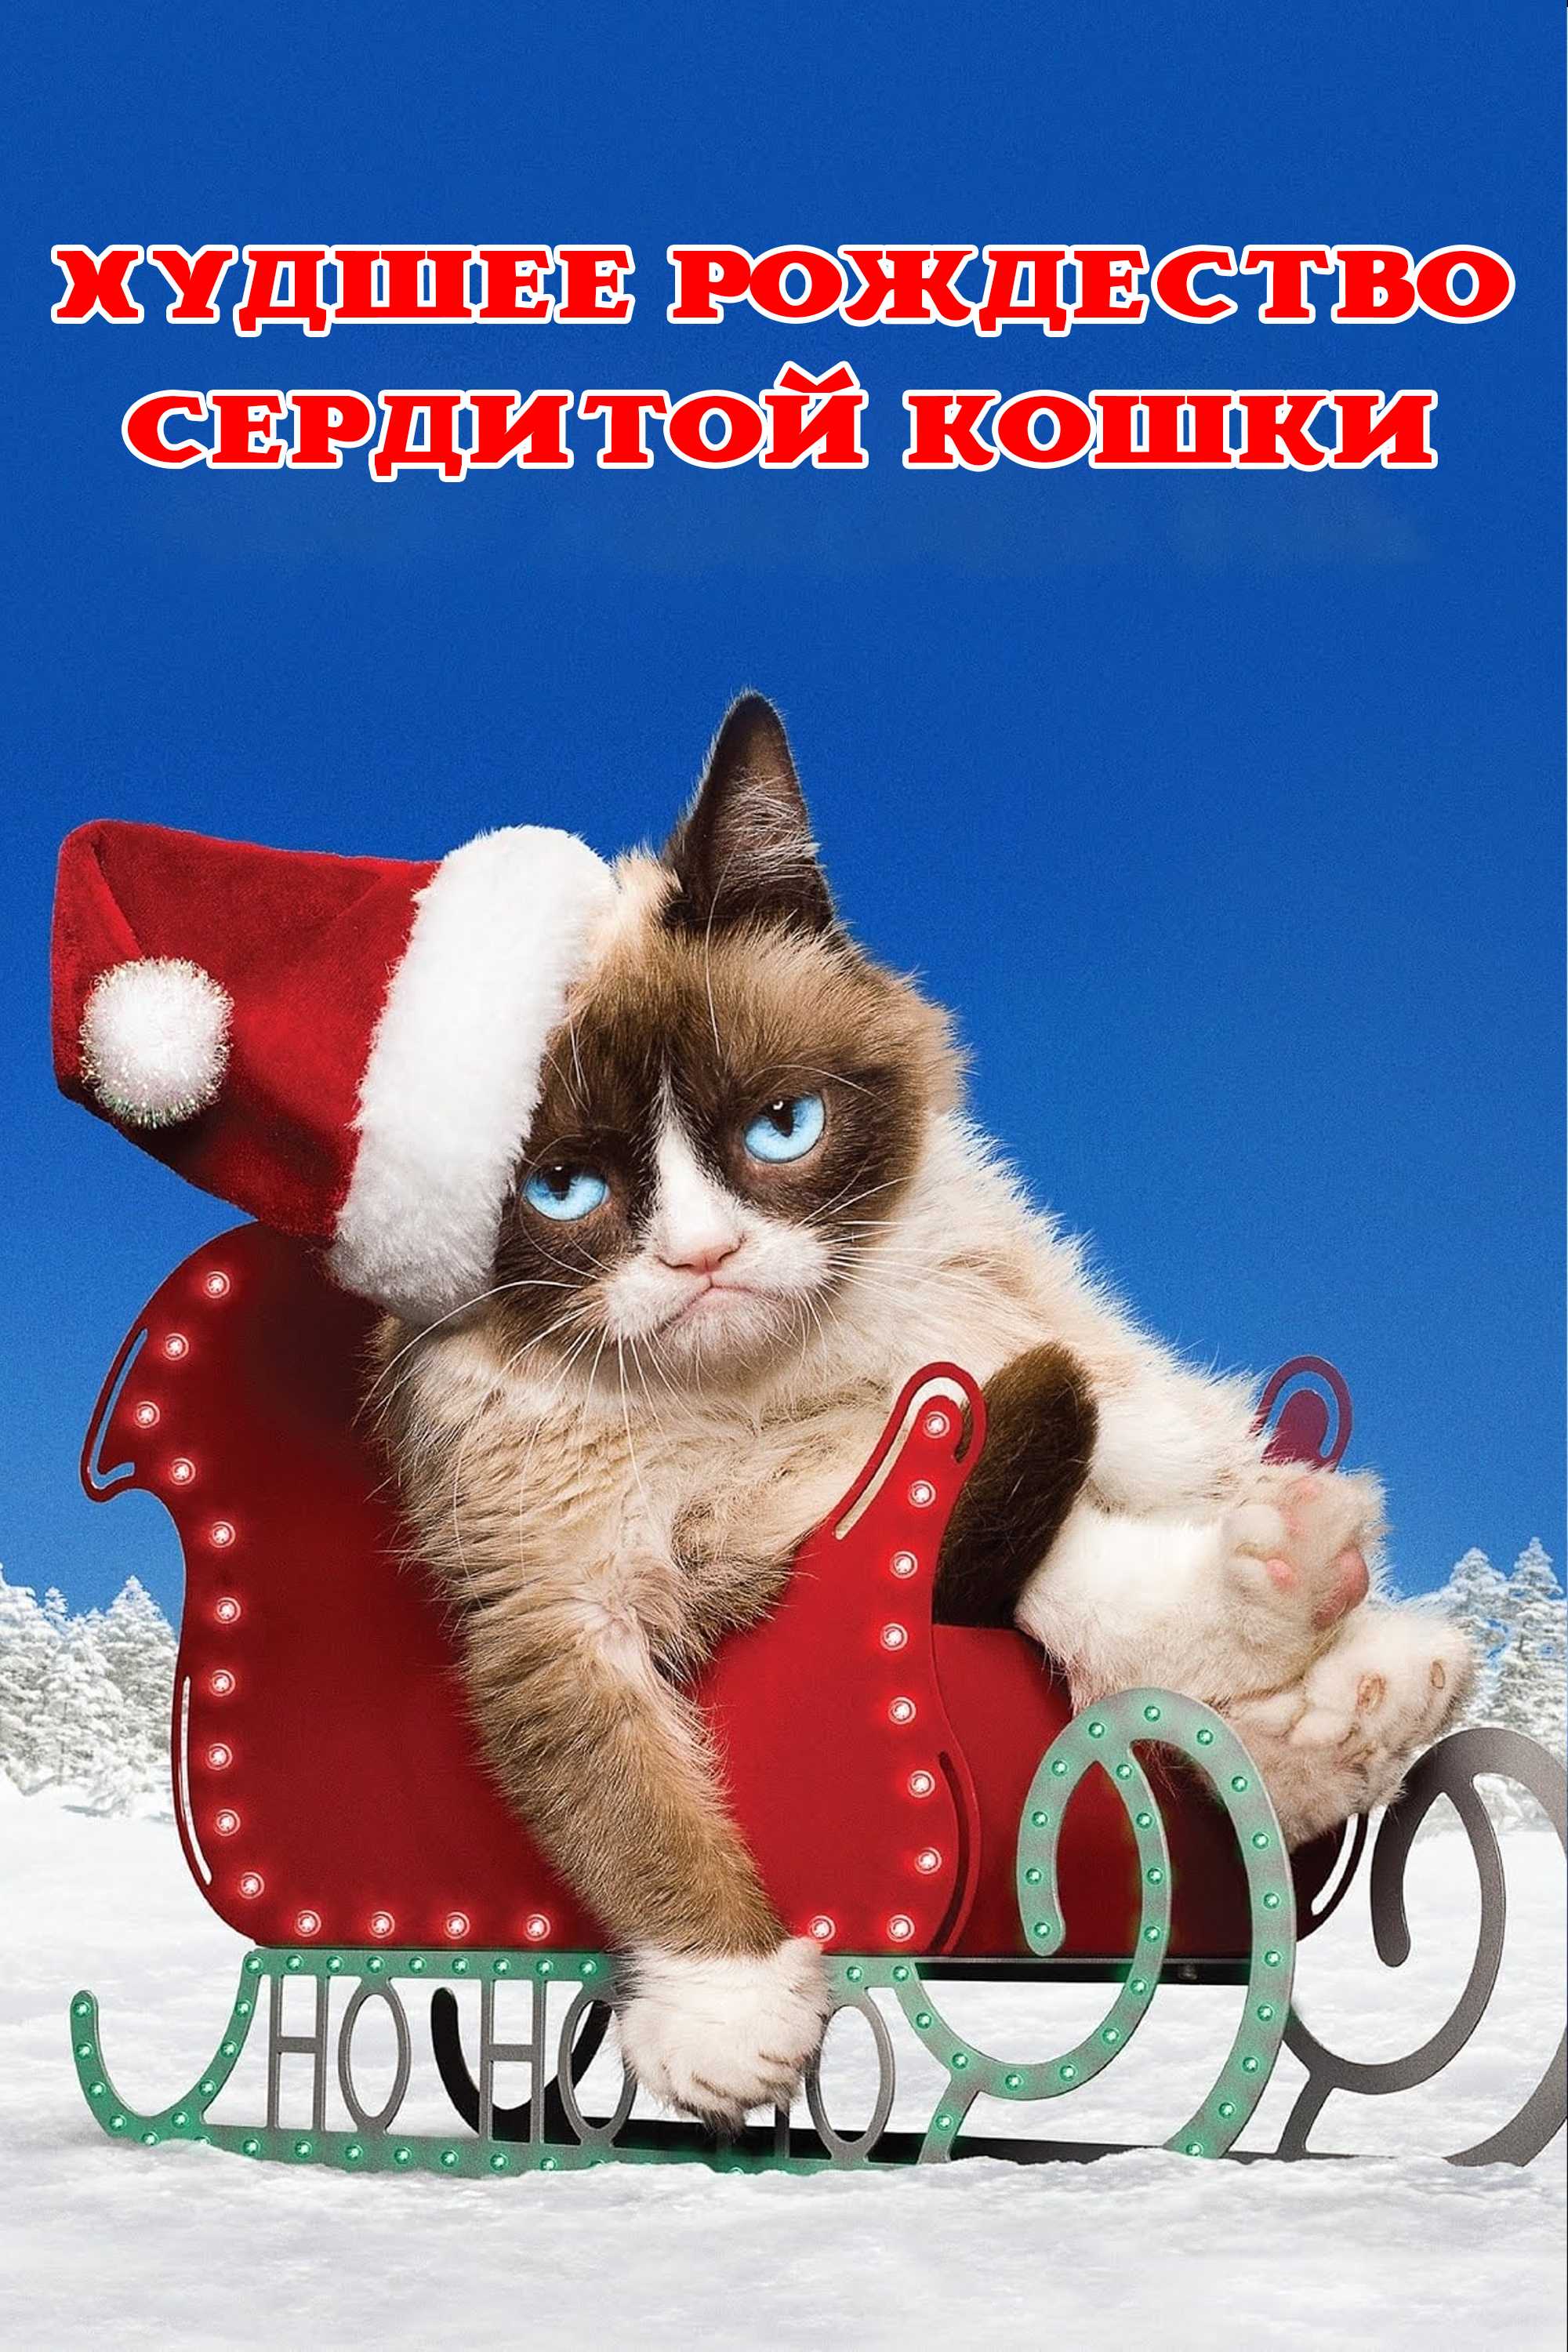 Худшее Рождество Сердитой кошки - SPlay da tomosha qilish